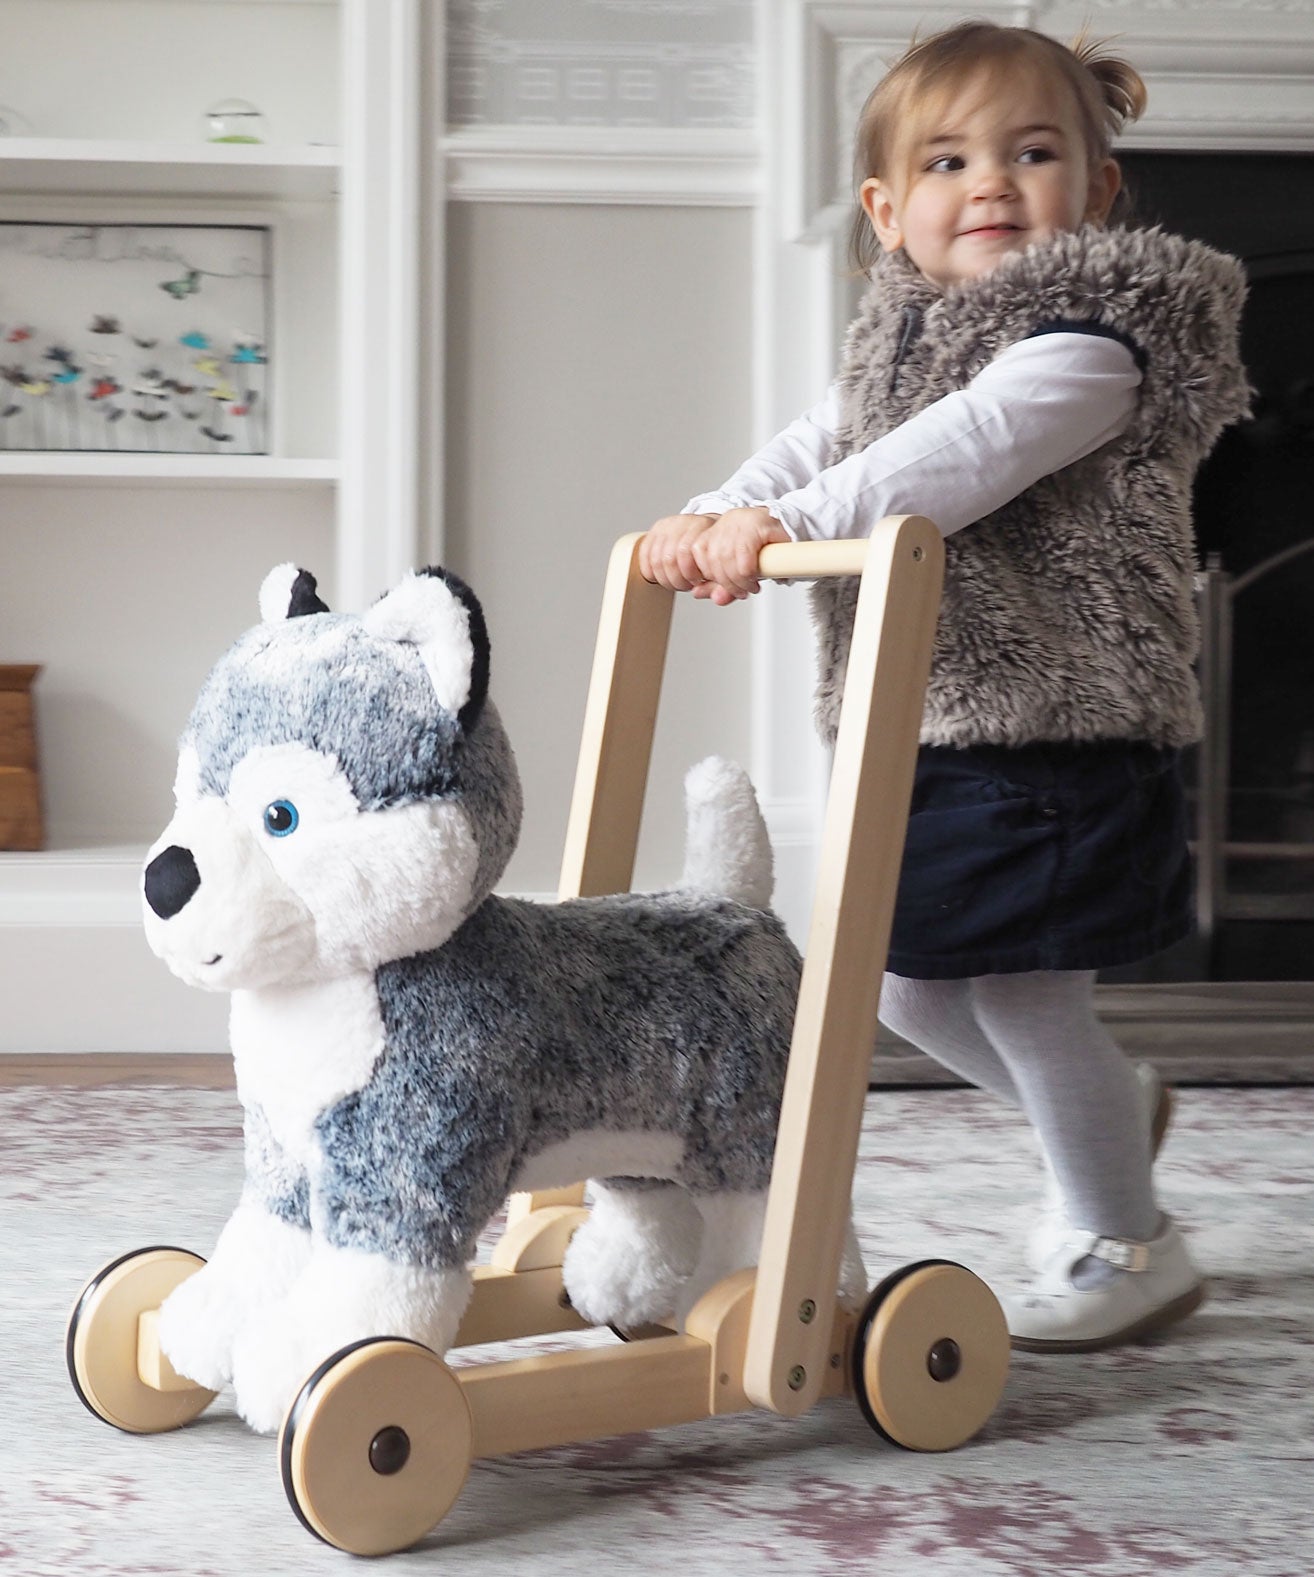 bøf thespian sponsoreret Se Gåvogn til Baby | Køb Sødeste Husky Hund til Babys Første Skridt